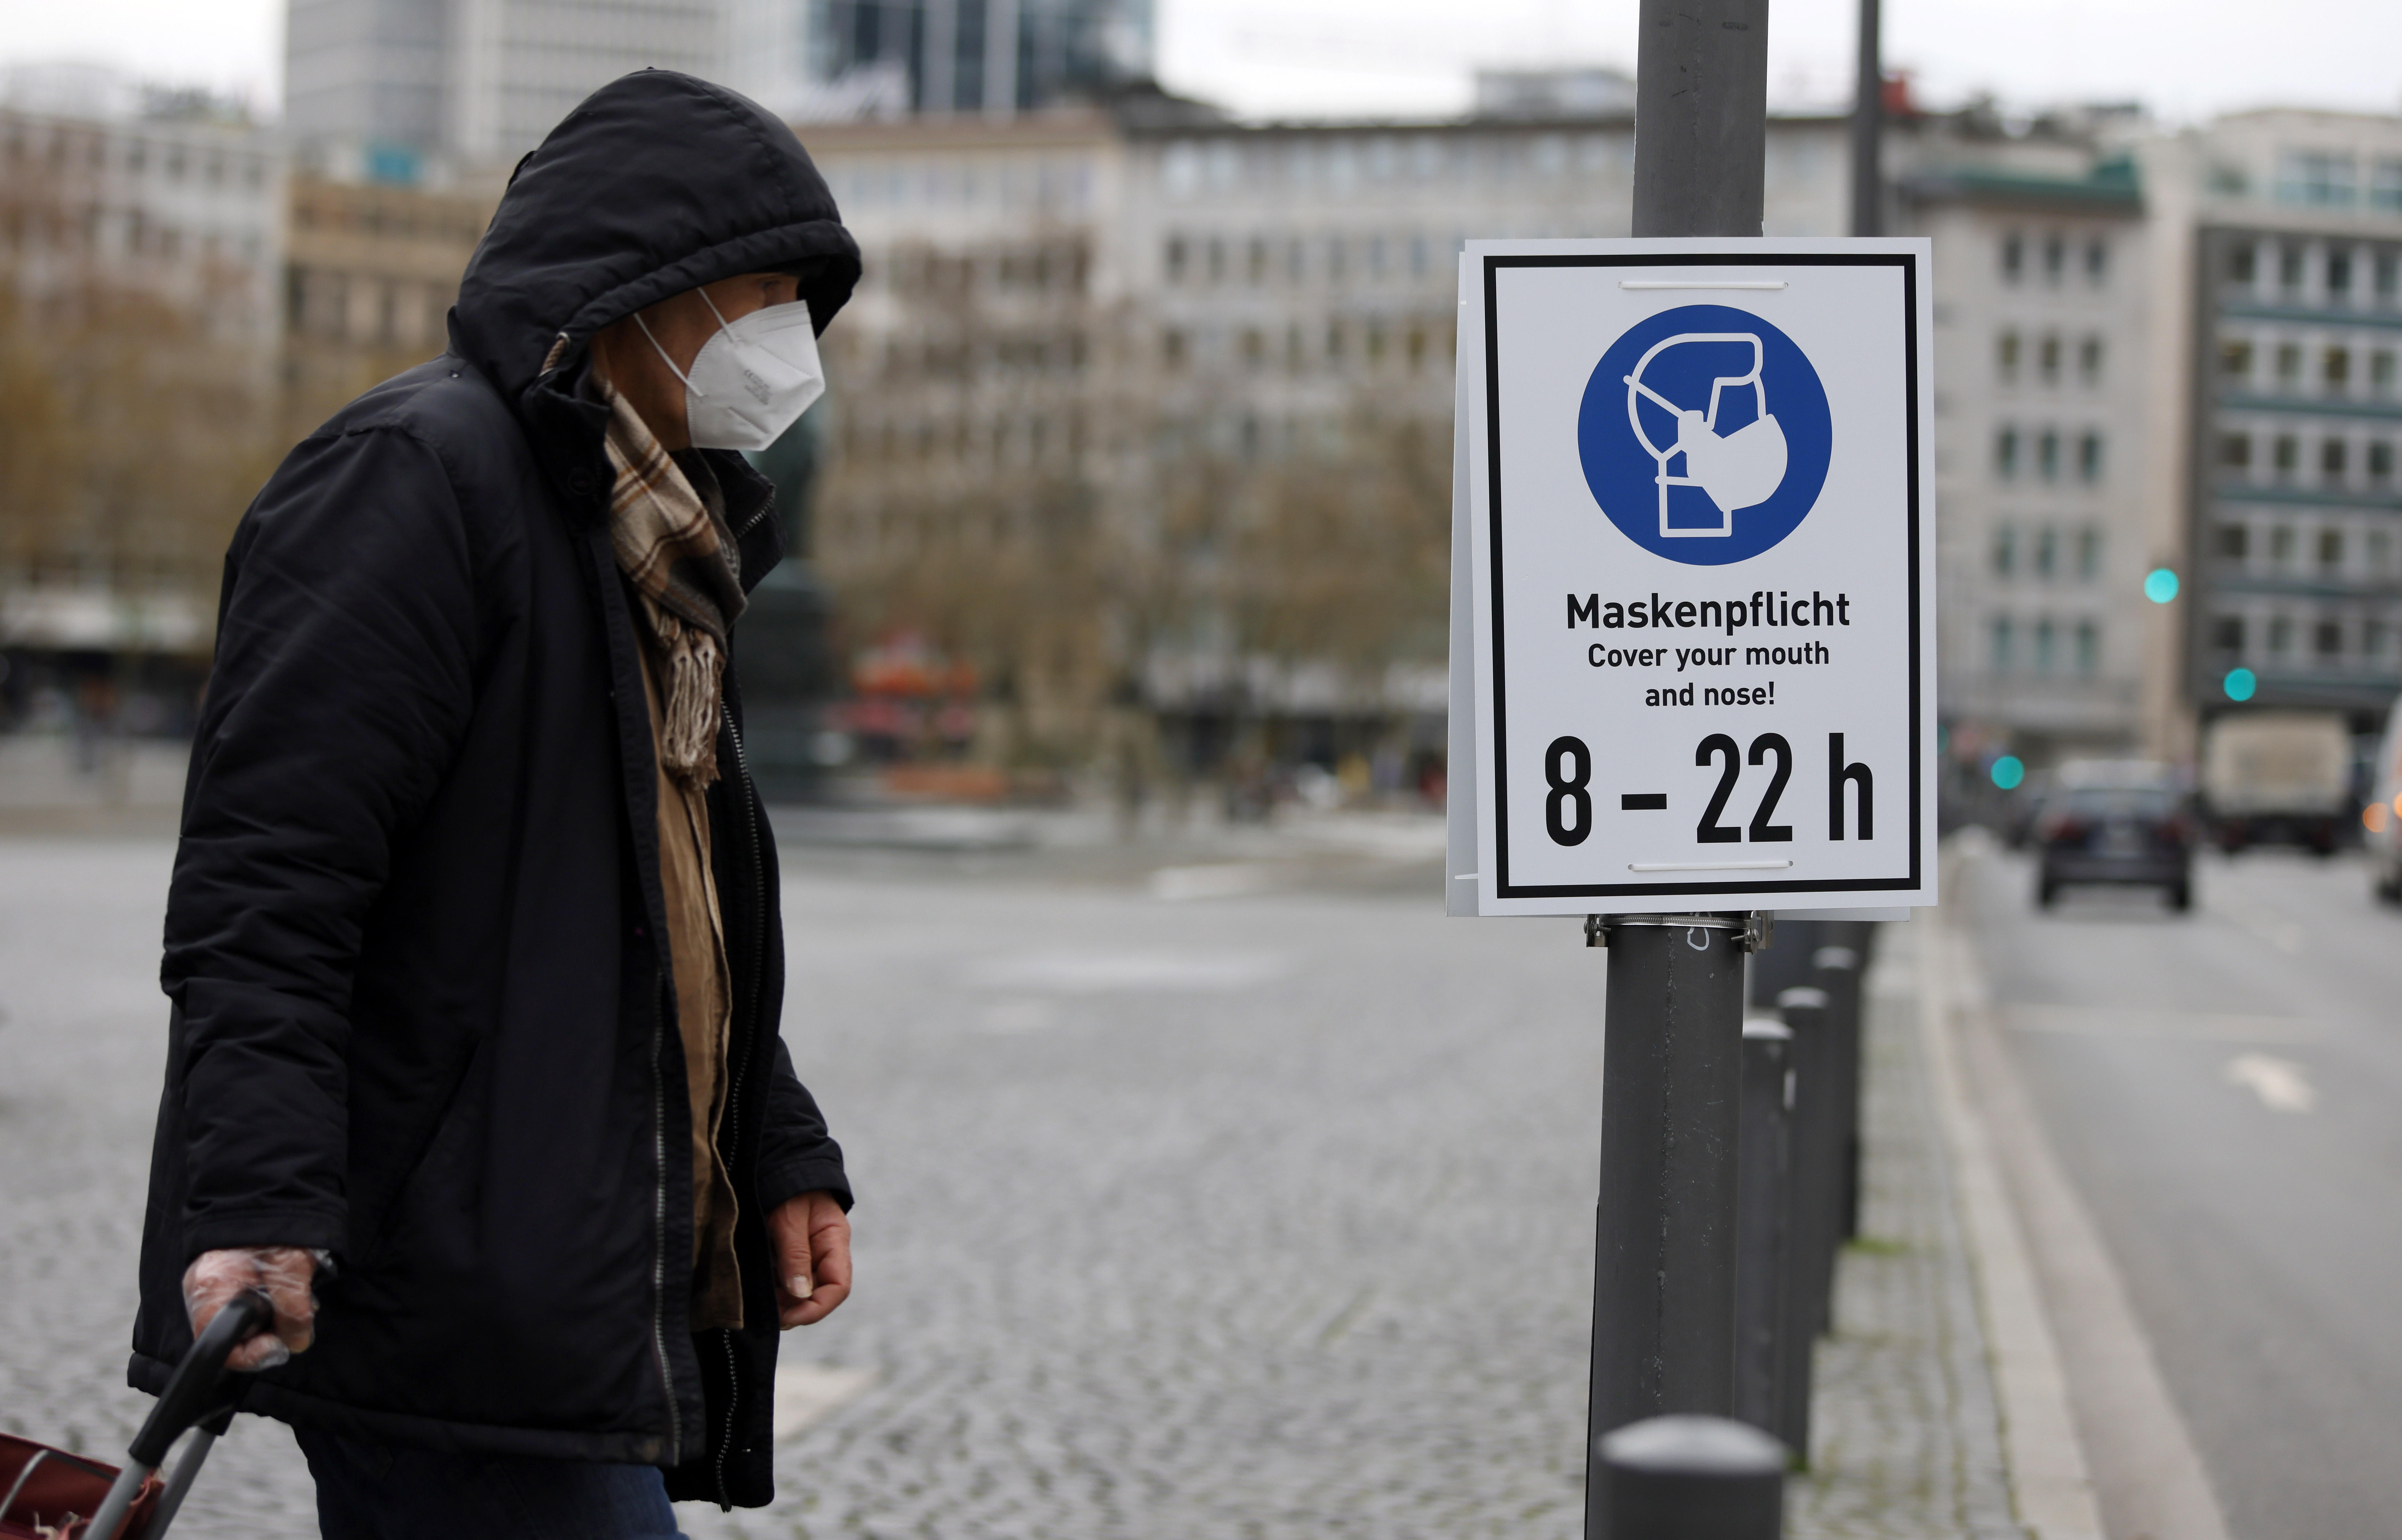 14 января 2021 года. Знак-предупреждение о необходимости масок и об ограничениях по времени во Франкфурте-на-Майне (Германия) во время общенационального локдауна из-за коронавируса COVID-19. Фото: EPA/ТАСС